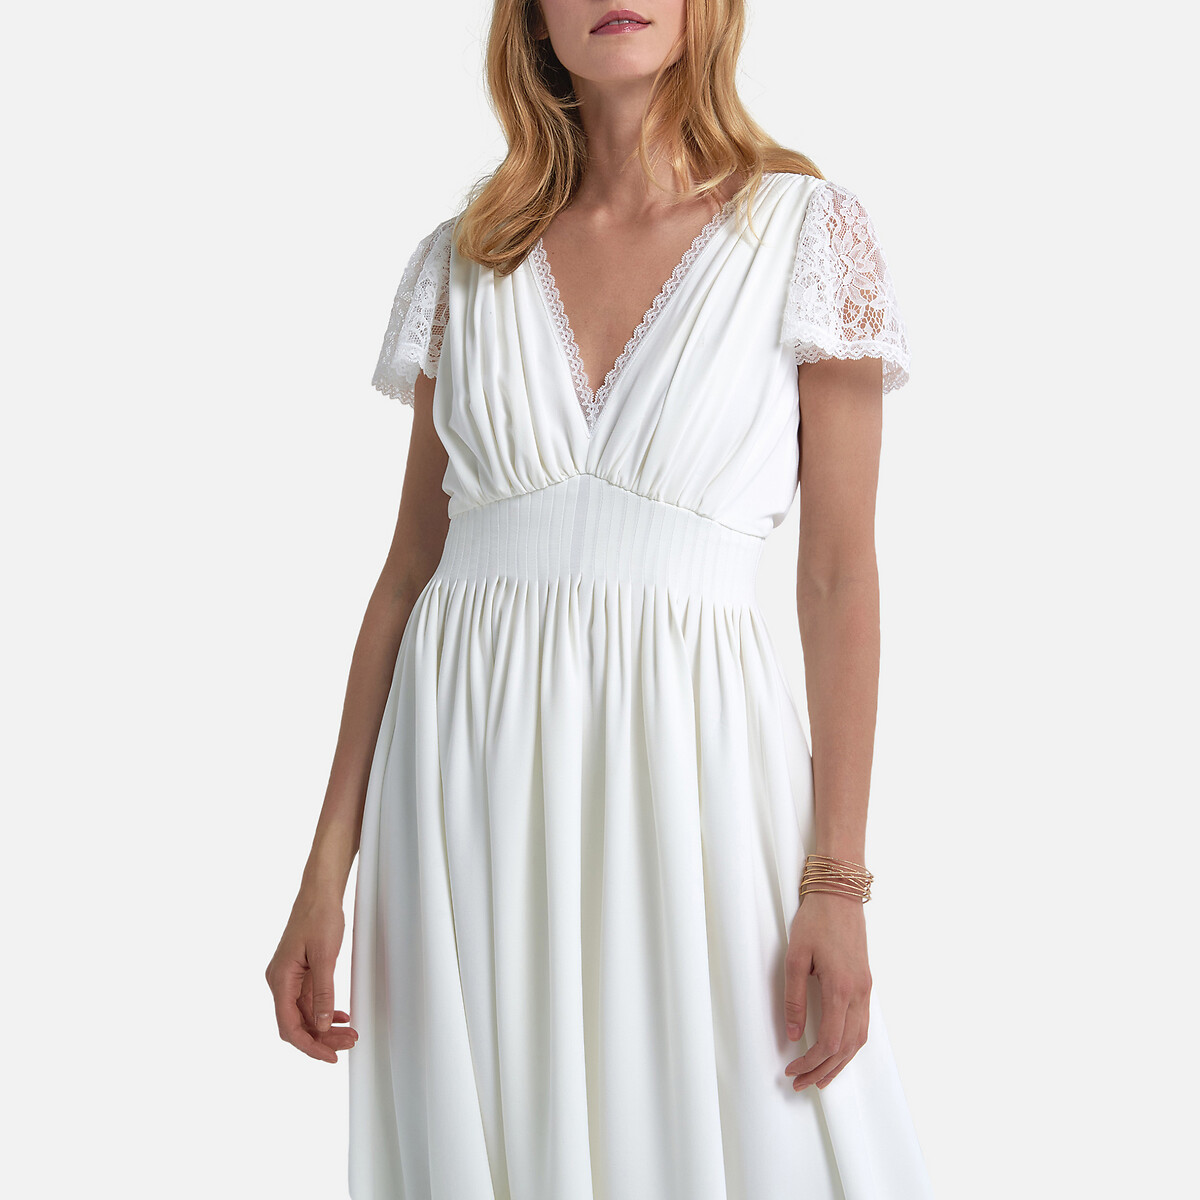 Платье La Redoute Невесты длинное короткие кружевные рукава 44 (FR) - 50 (RUS) белый, размер 44 (FR) - 50 (RUS) Невесты длинное короткие кружевные рукава 44 (FR) - 50 (RUS) белый - фото 4